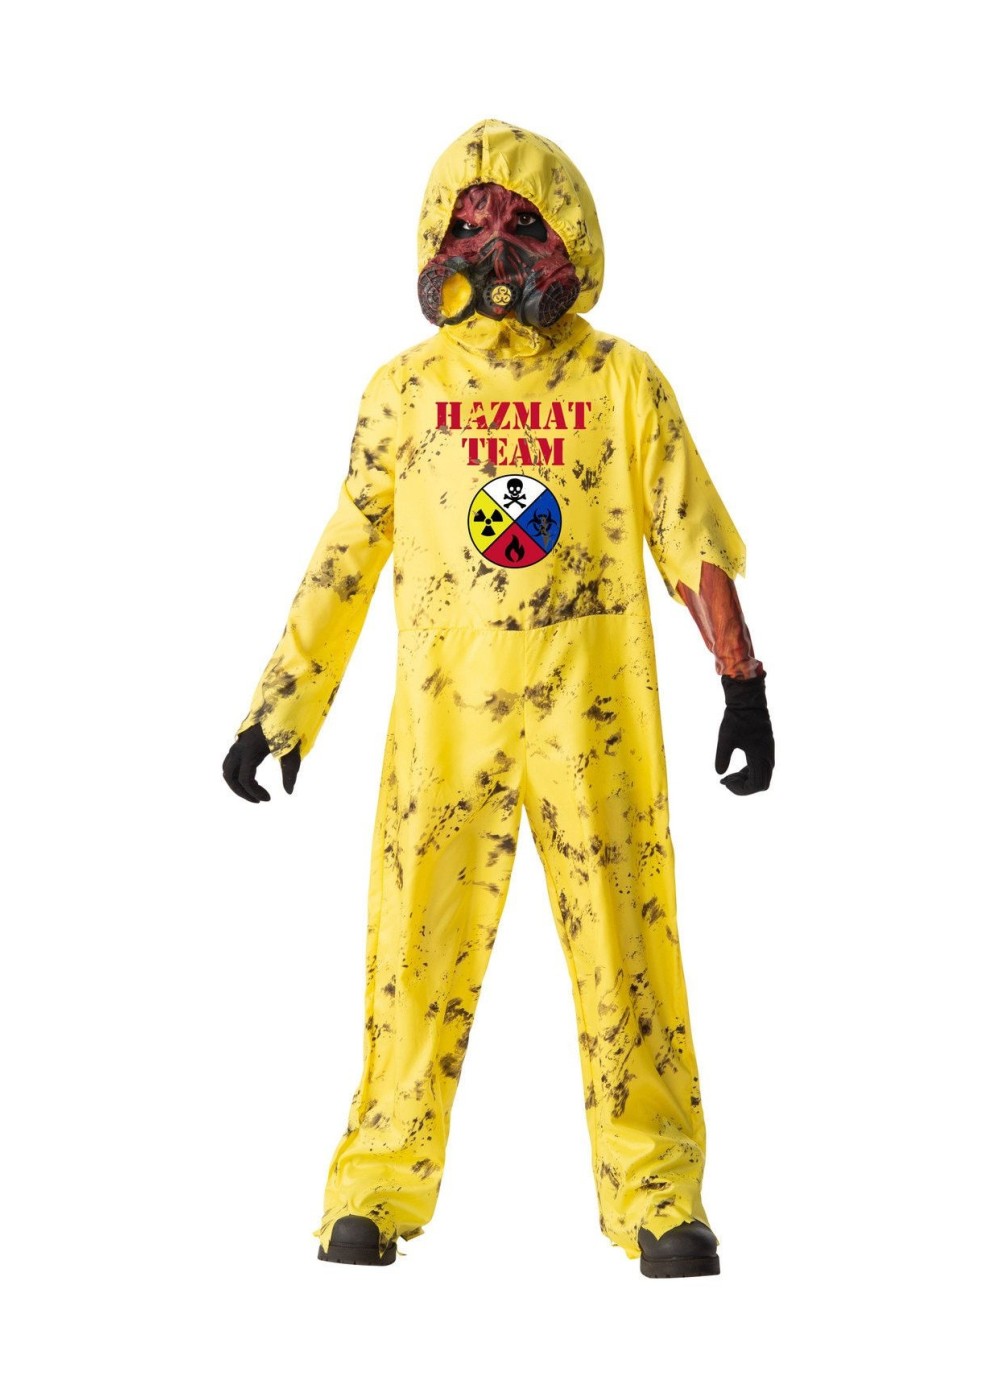 Boys Scary Zombie Hazmat Costume